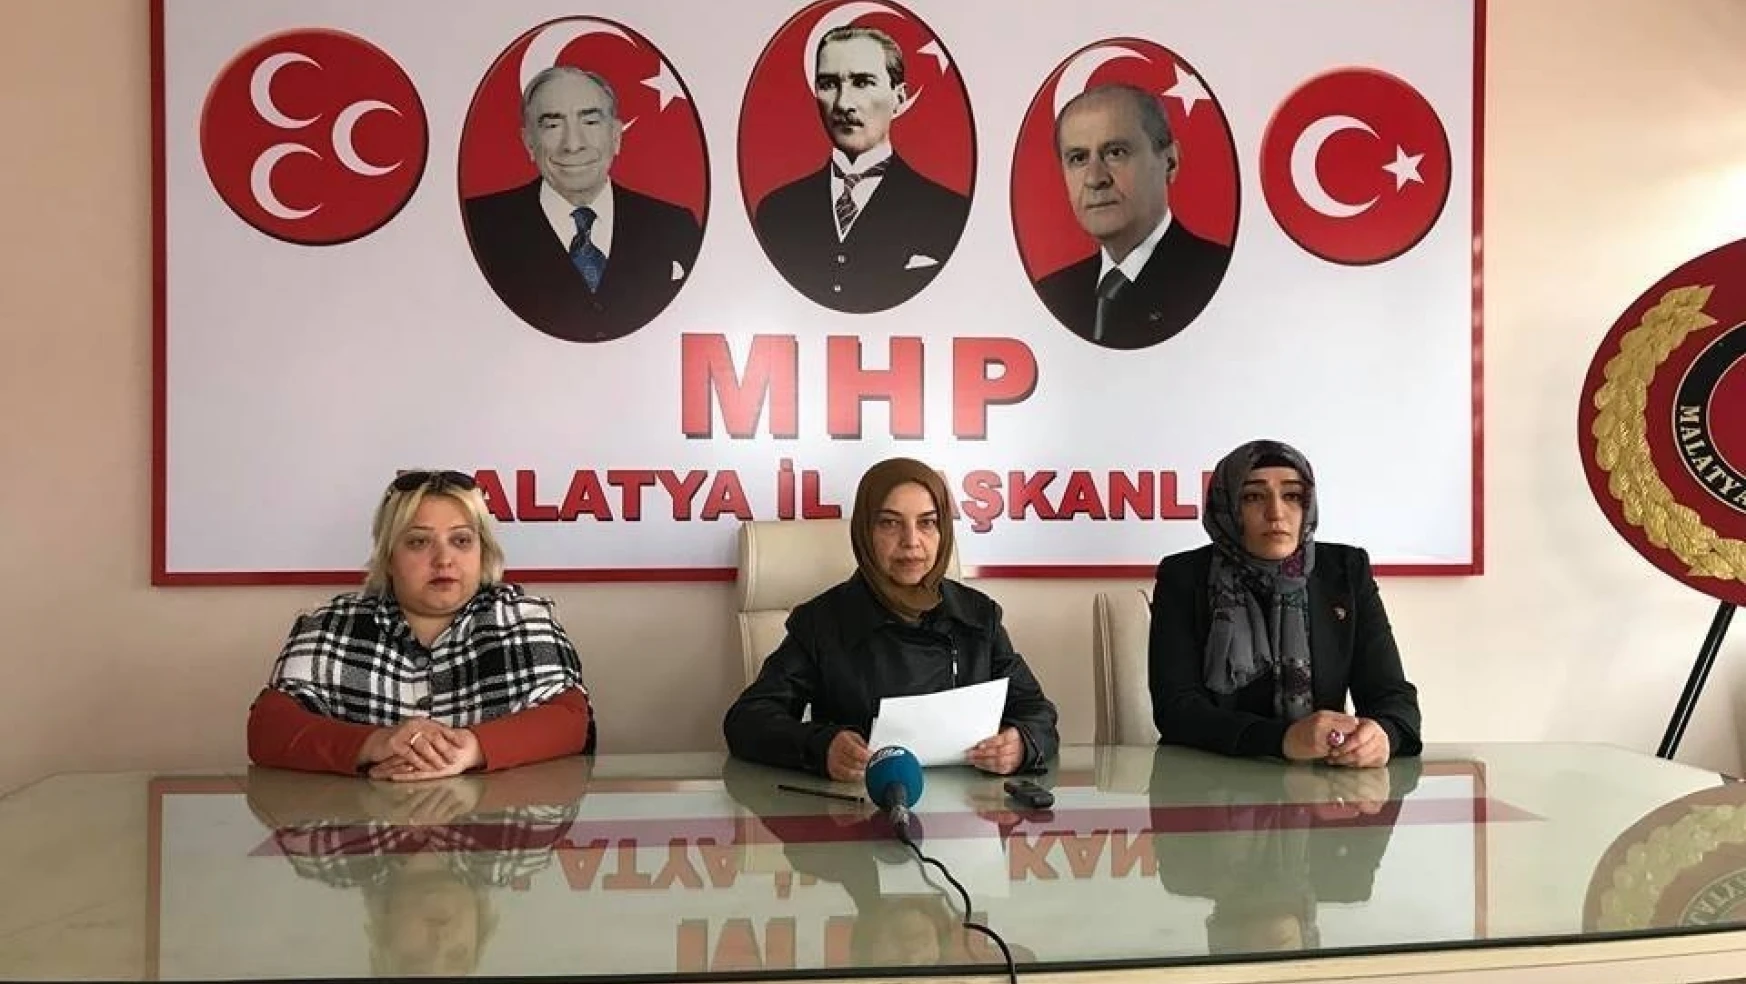 MHP'li Çiçek'in, silahlı kavga iddiaları ile ilgili açıklaması
